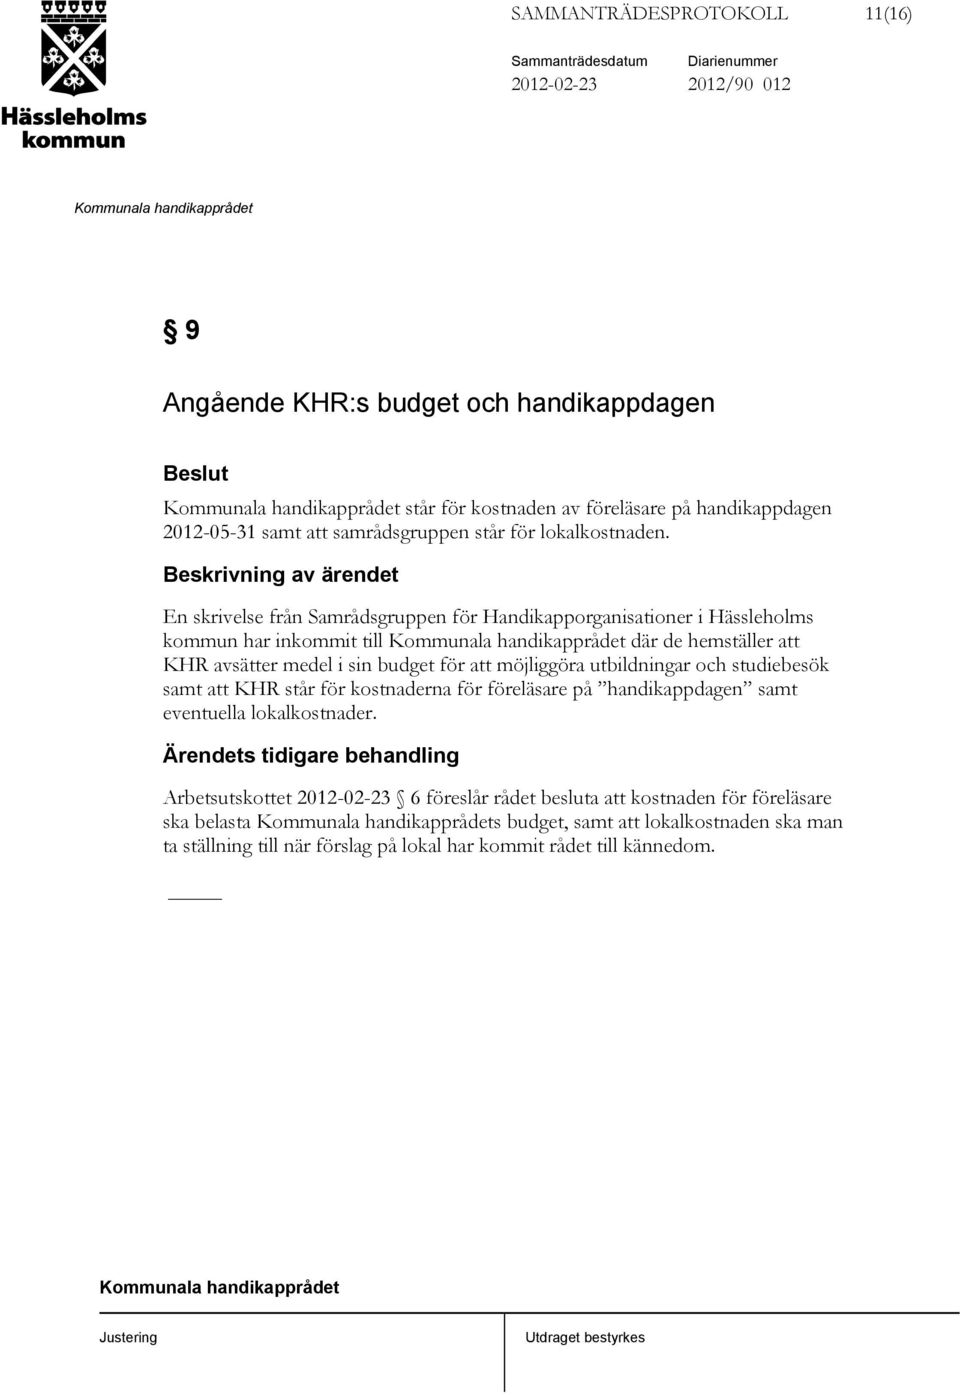 En skrivelse från Samrådsgruppen för Handikapporganisationer i Hässleholms kommun har inkommit till där de hemställer att KHR avsätter medel i sin budget för att möjliggöra